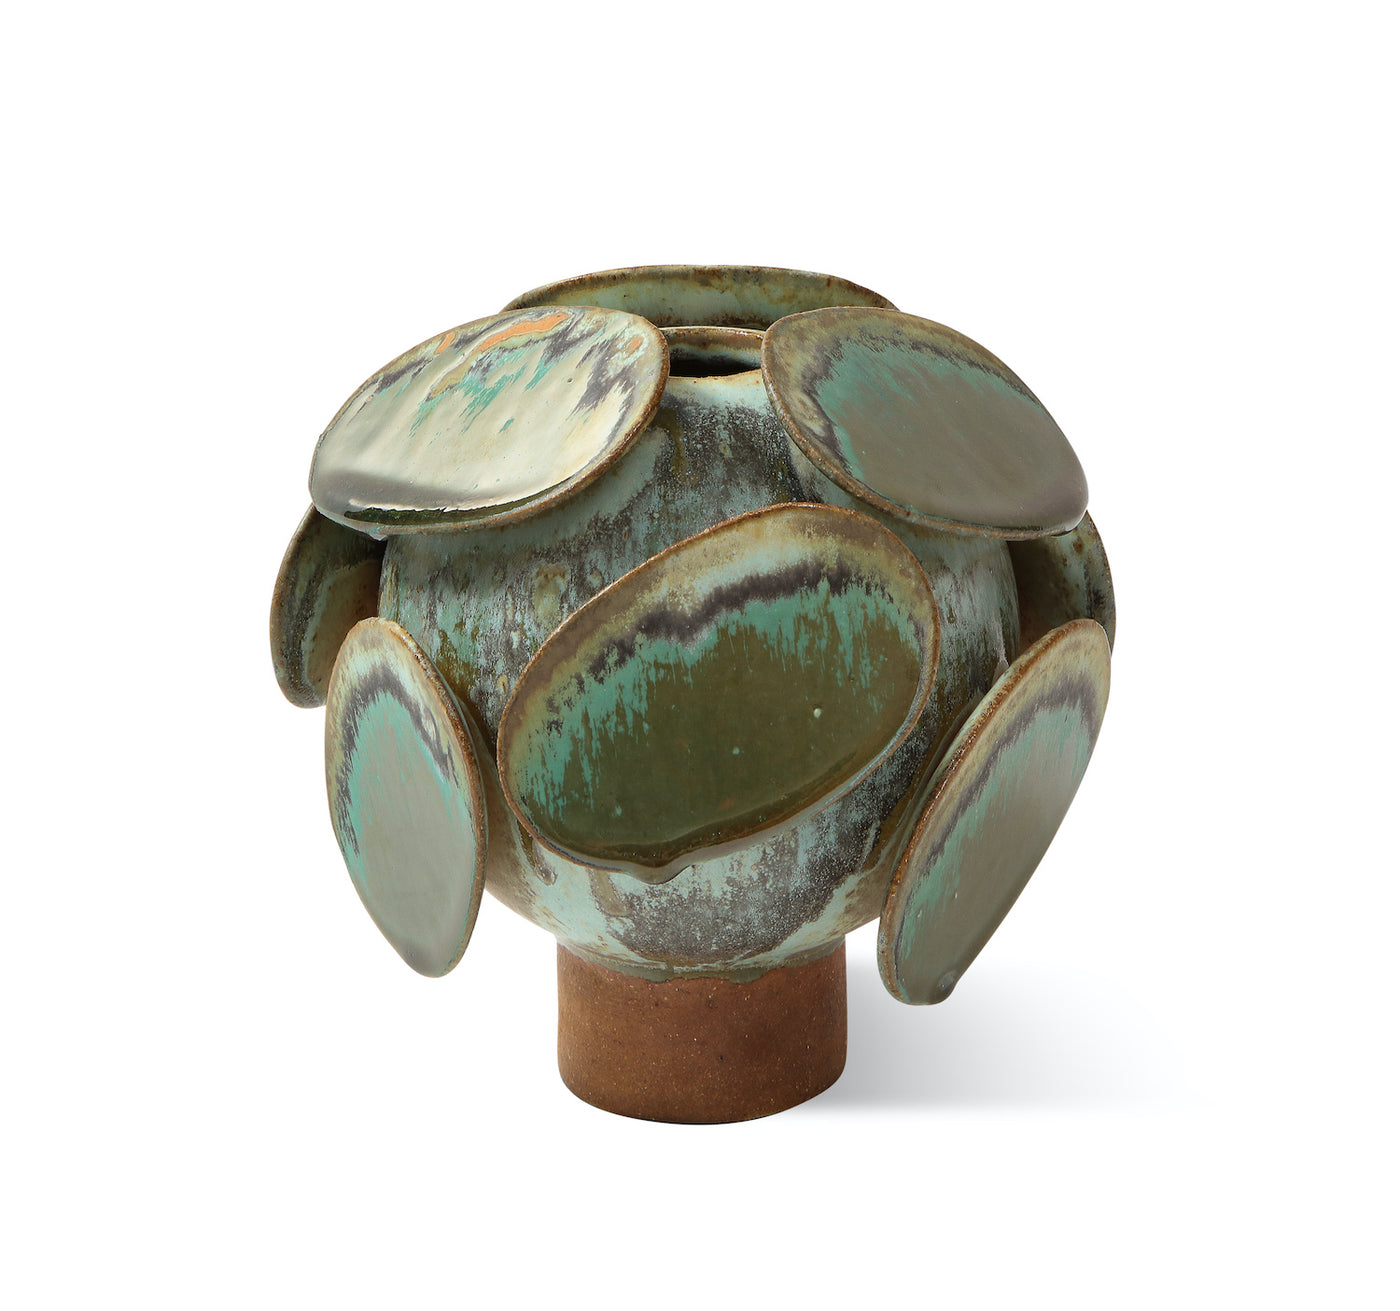 Lichen Vase #1 by Robbie Heidinger